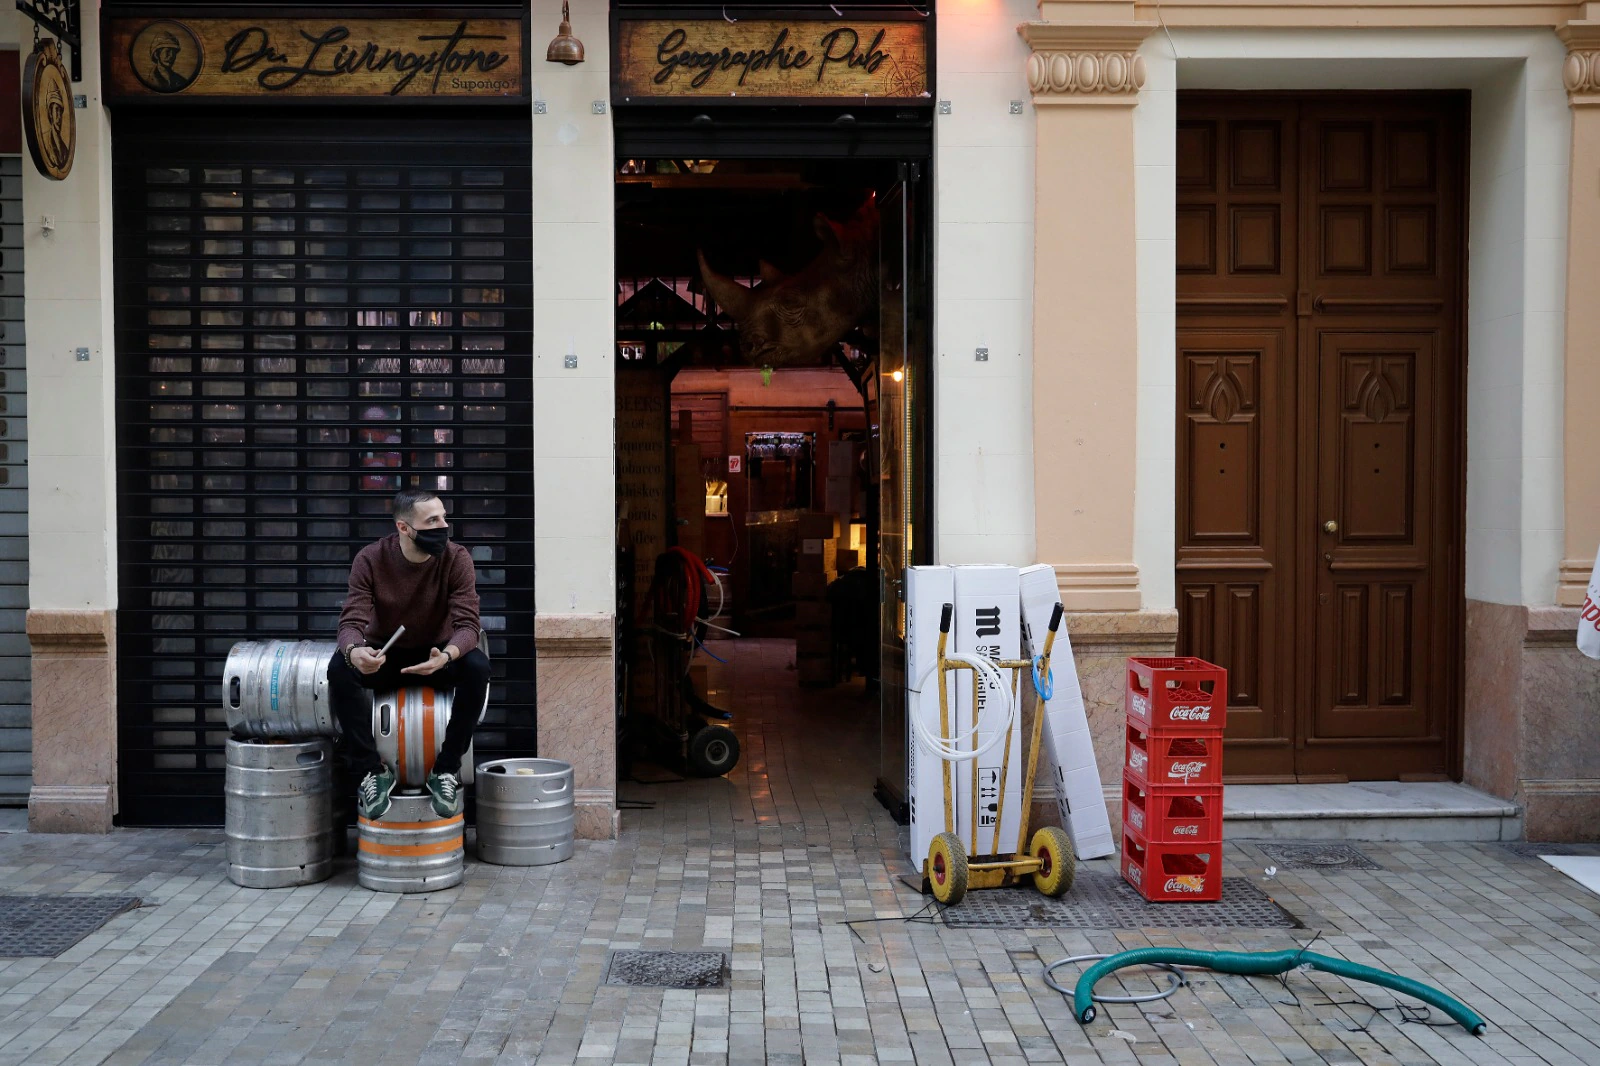 El cierre de los comercios en Málaga deja un Centro mudo y de calles vacías